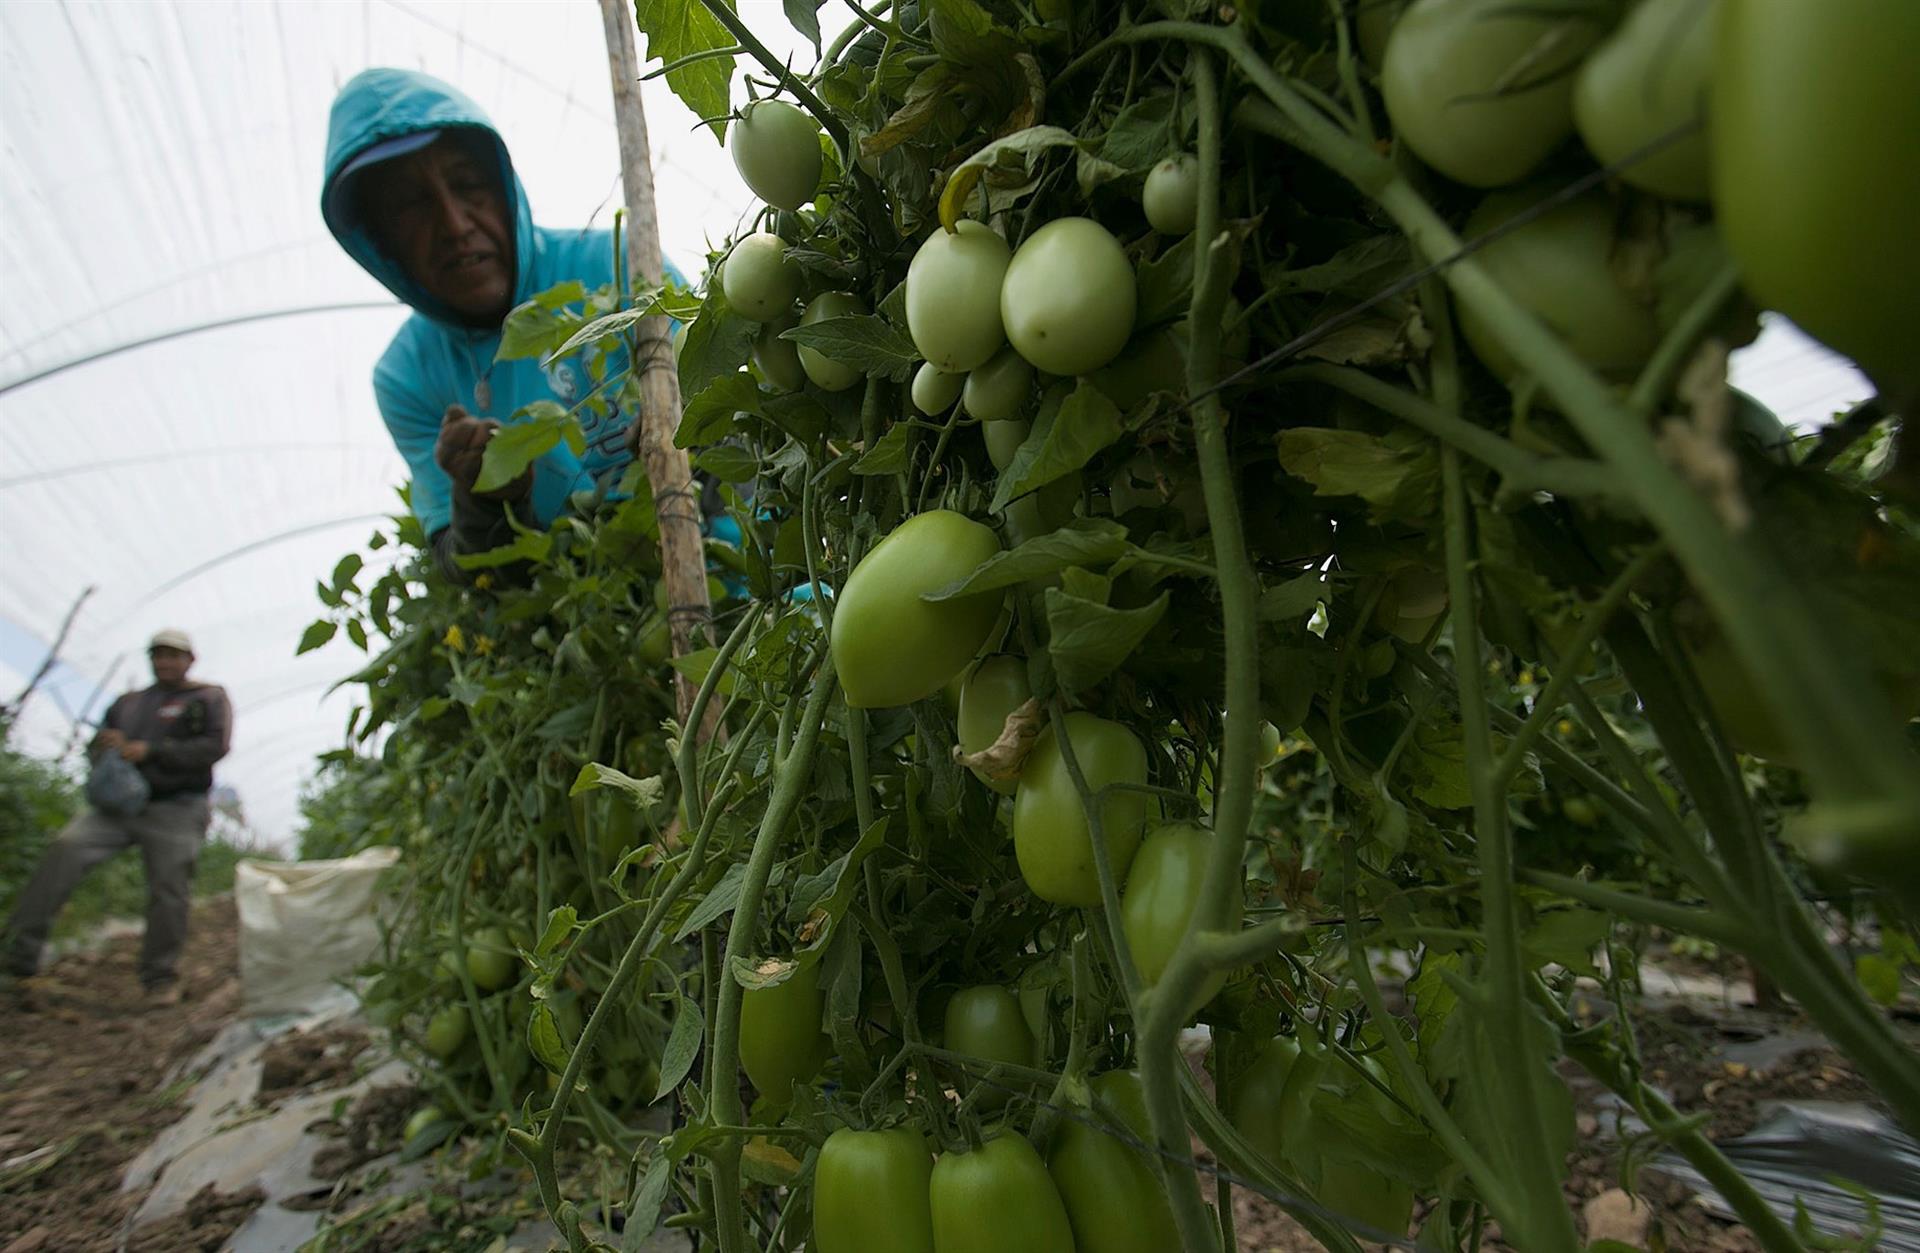 Campesinos dan mantenimiento a las plantas de Tomate en un campo del municipio de Tarimbaro, en el estado de Michoacán (México). Imagen de archivo. EFE/Luis Enrique Granados
